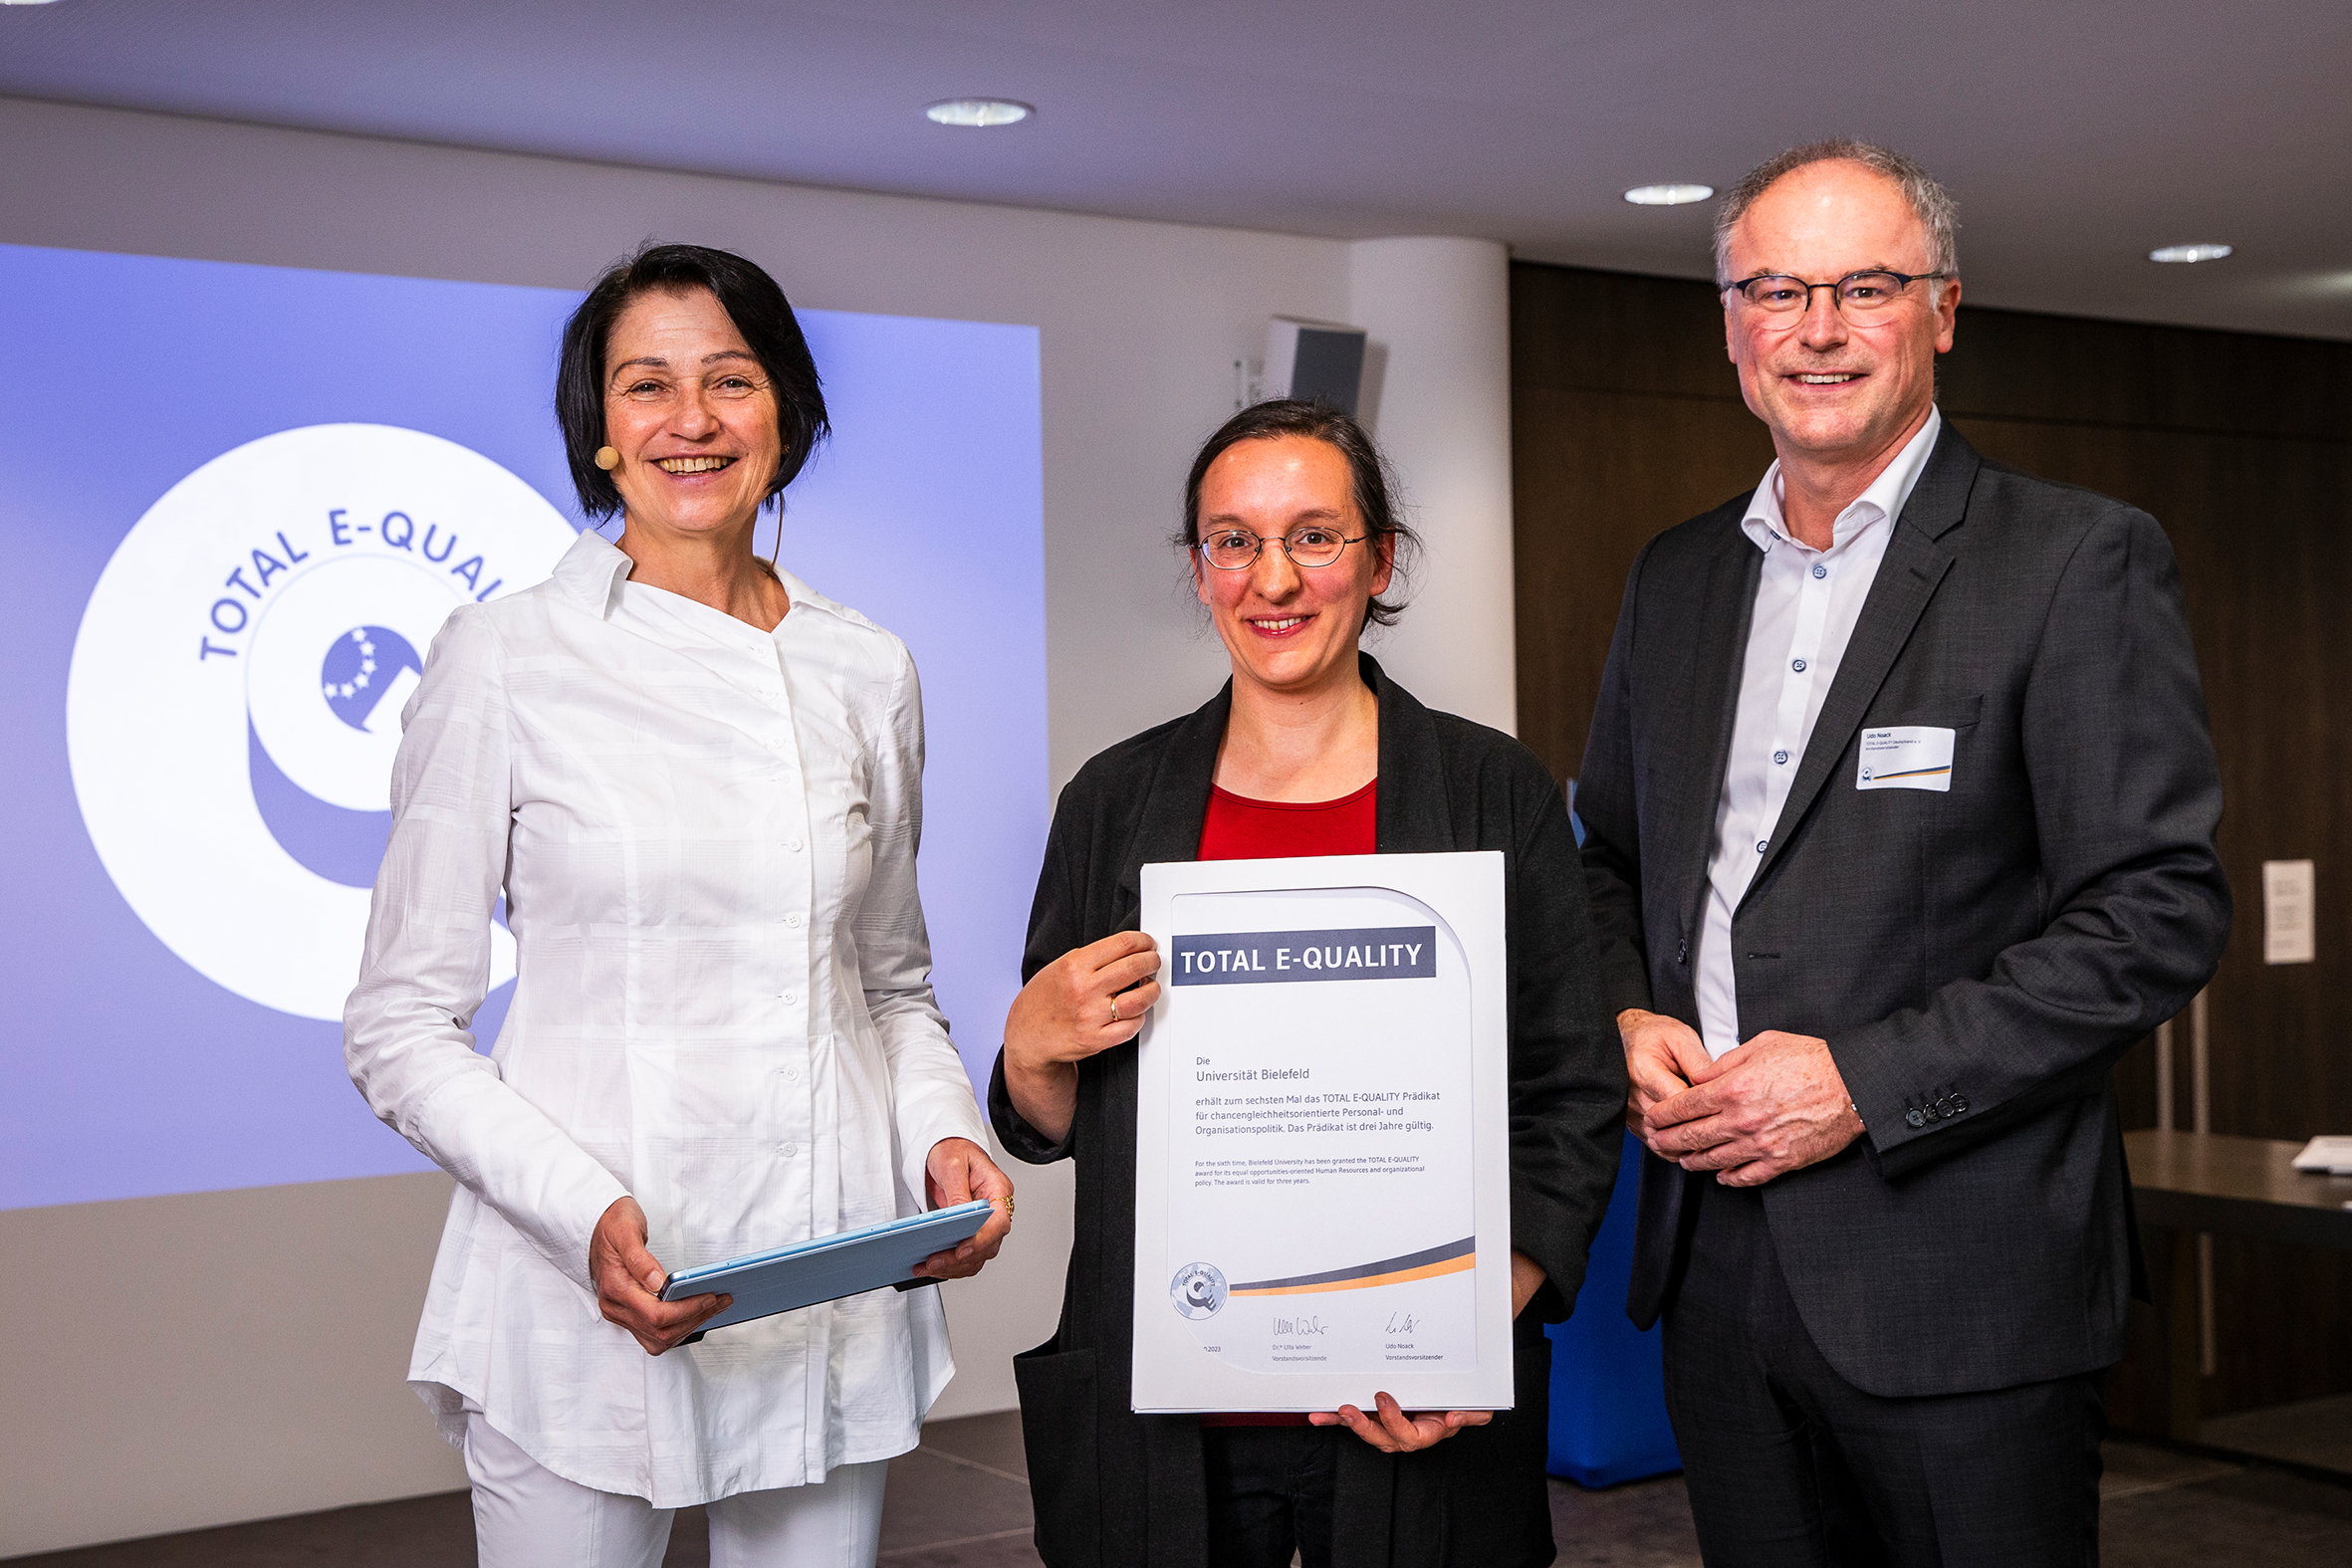 Prorektorin Alexandra Kaasch (Mitte) nimmt das Zertifikat von den Vorstandsvorsitzenden des TEQ, Dr. Ulla Weber und Udo Noack, entgegen.